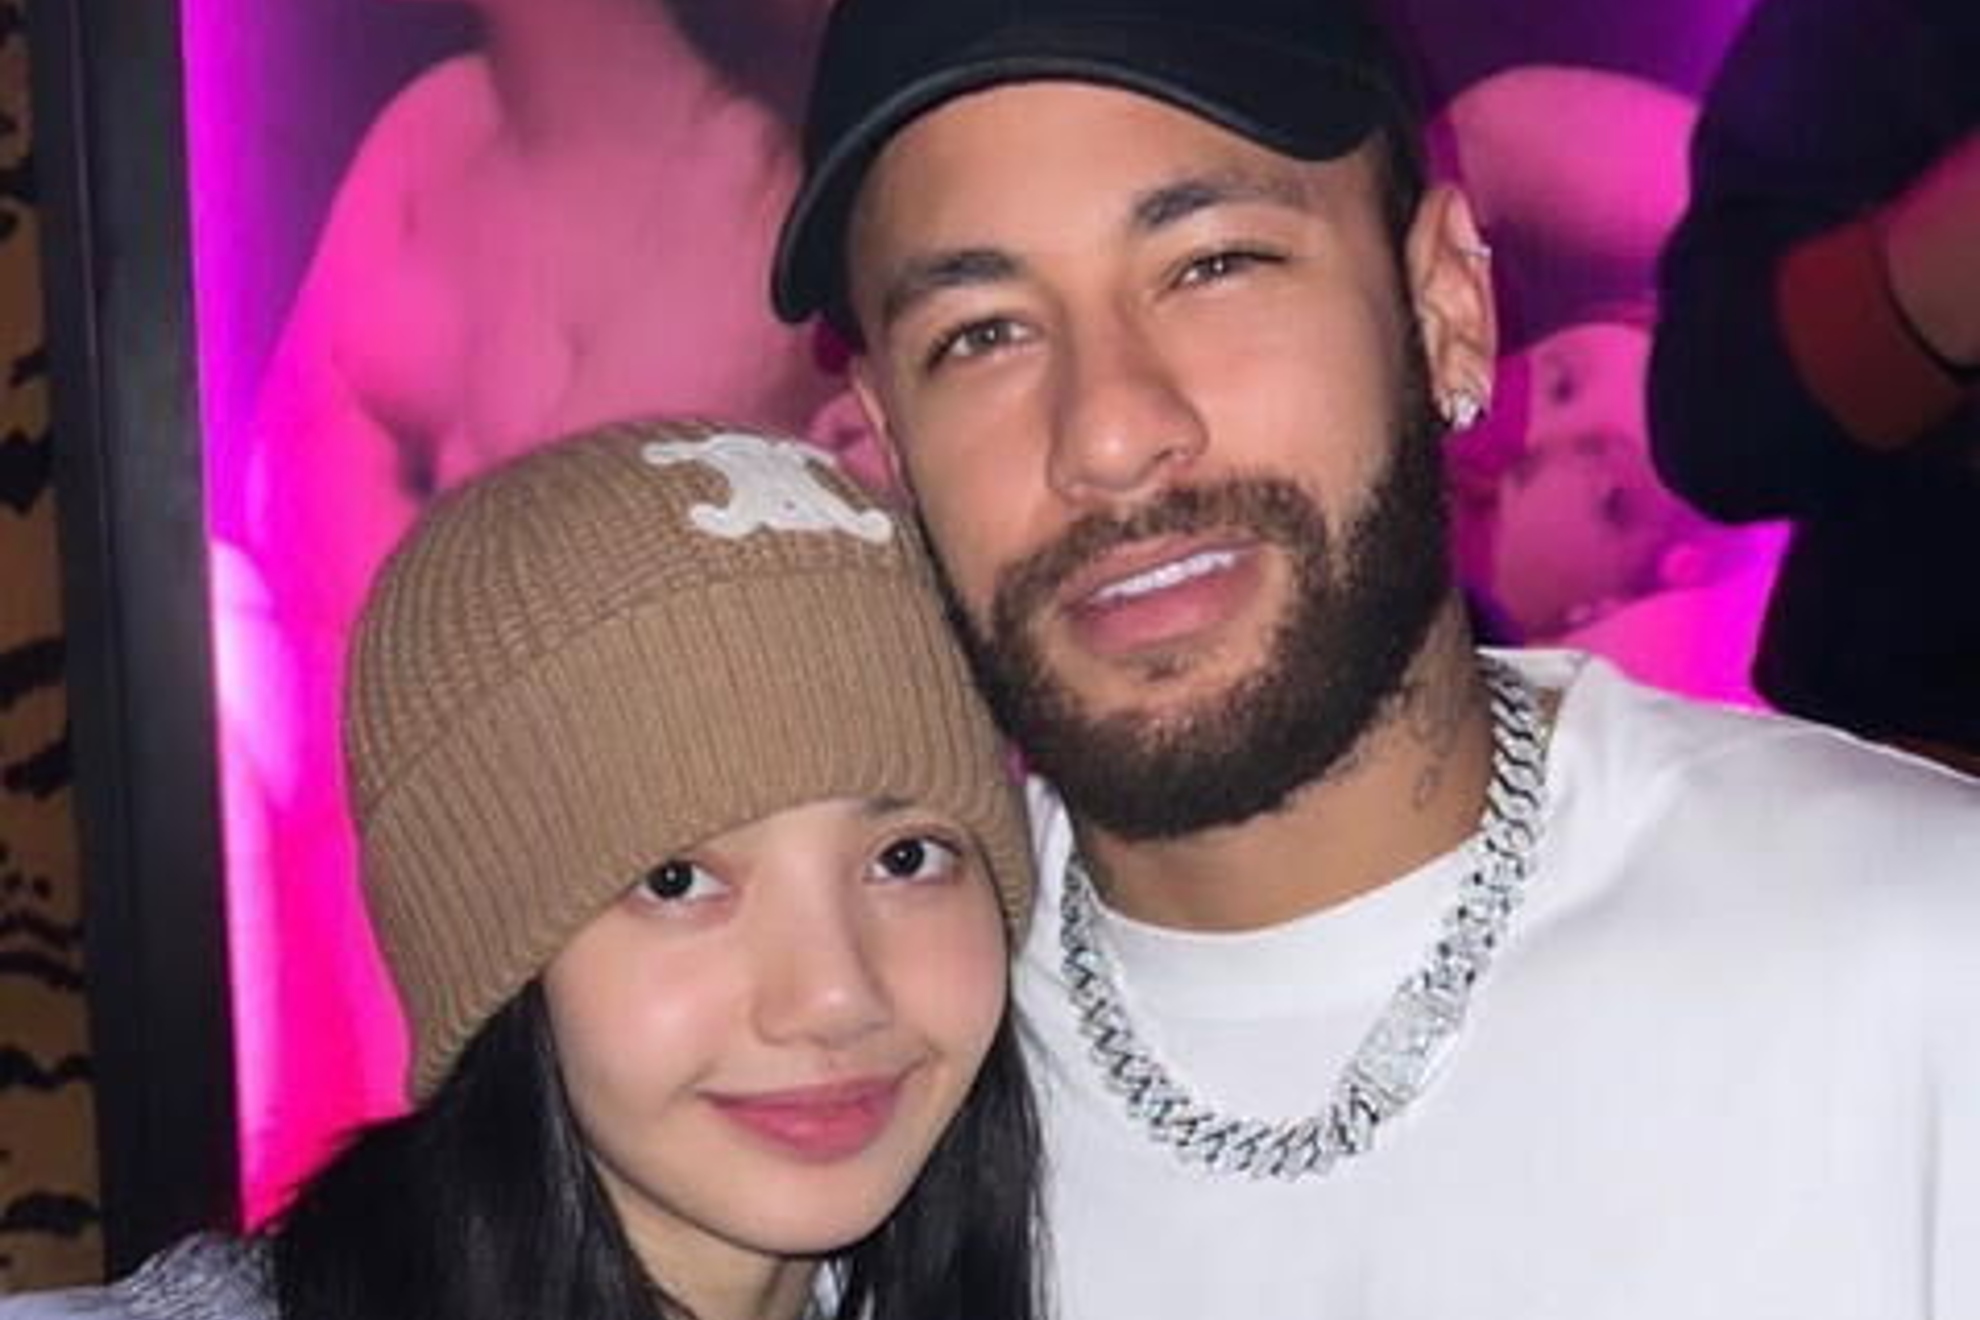 Neymar conoce a Lisa, estrella del K-pop con Blackpink